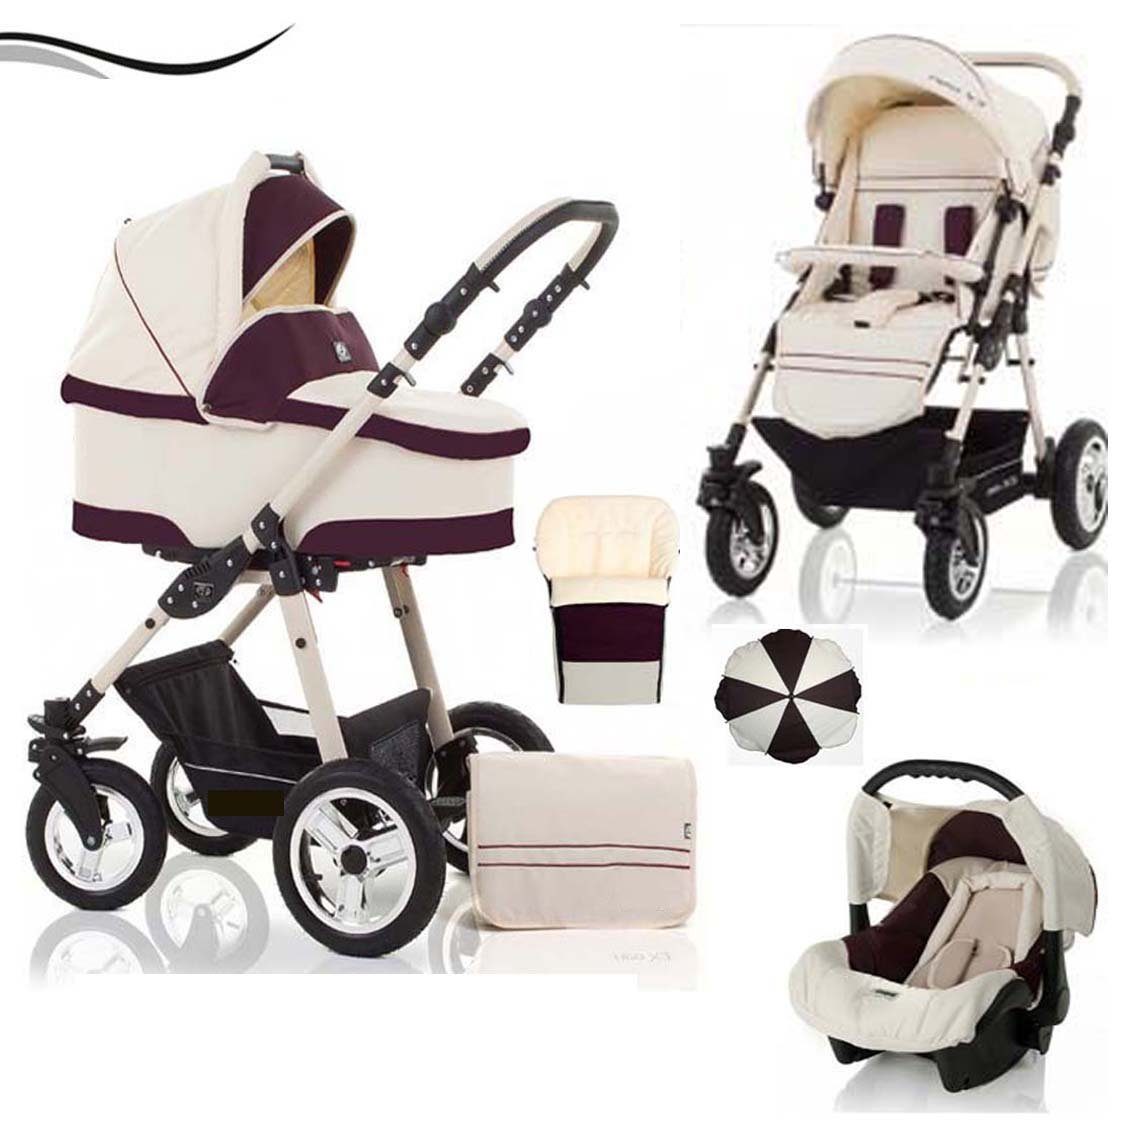 babies-on-wheels Kombi-Kinderwagen City Star 5 in 1 inkl. Autositz, Sonnenschirm und Fußsack - 18 Teile - von Geburt bis 4 Jahre in 16 Farben Creme-Bordeaux